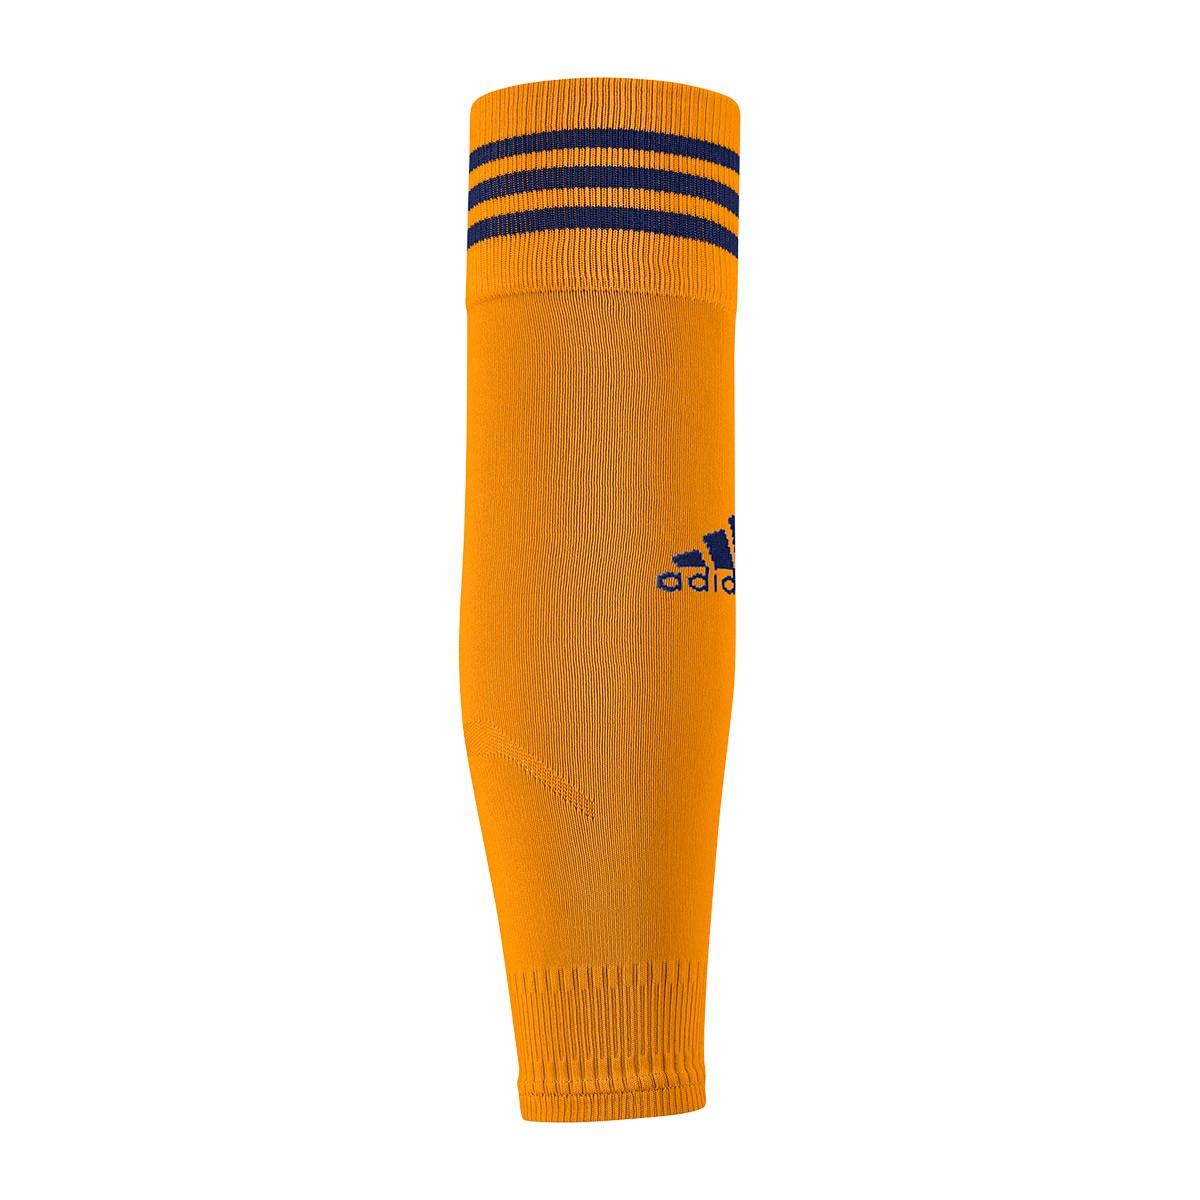 adidas orange football socks